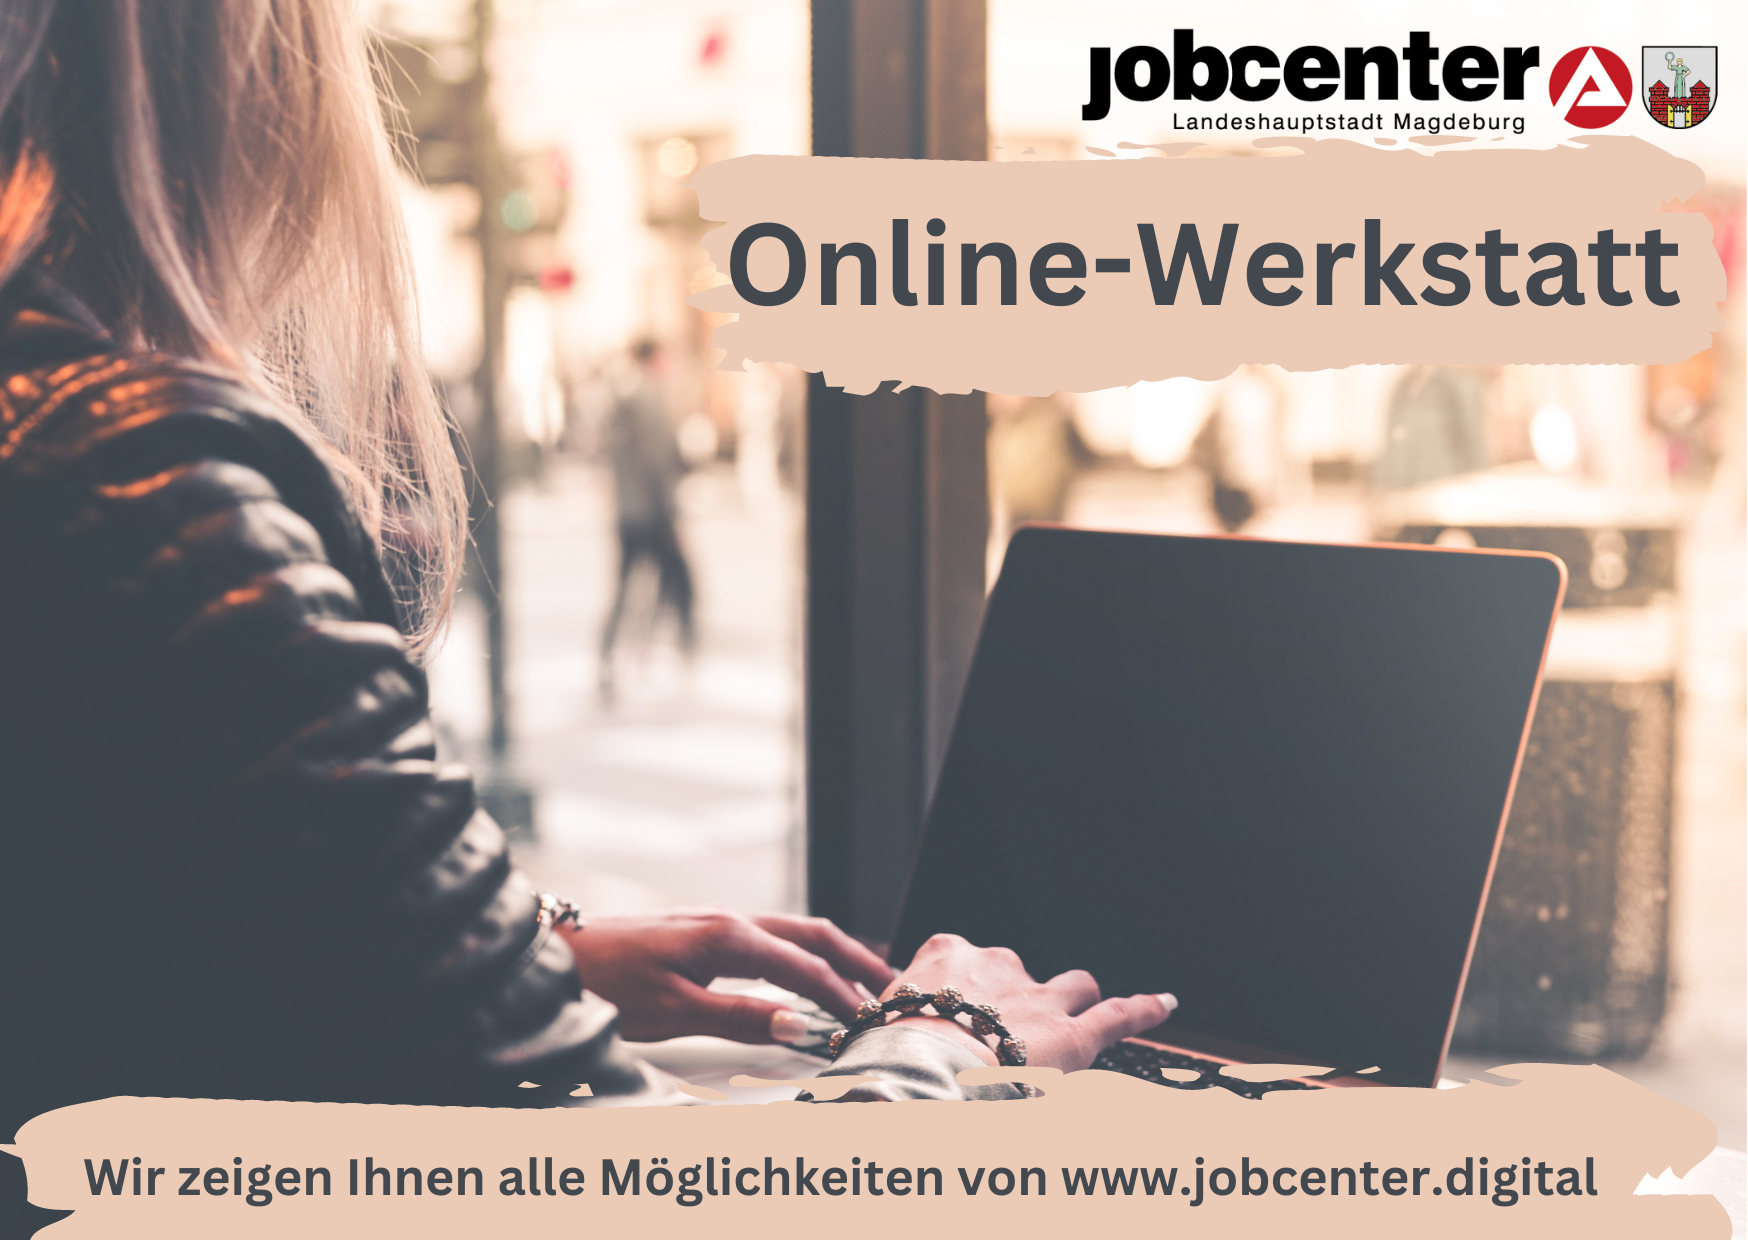 Frau sitzt vor einem Laptop. Beschriftung jobcenter Landeshauptstadt Magdeburg, Online-Werkstatt. Wir zeigen Ihnen alle Möglichkeiten von www.jobcenter.digital